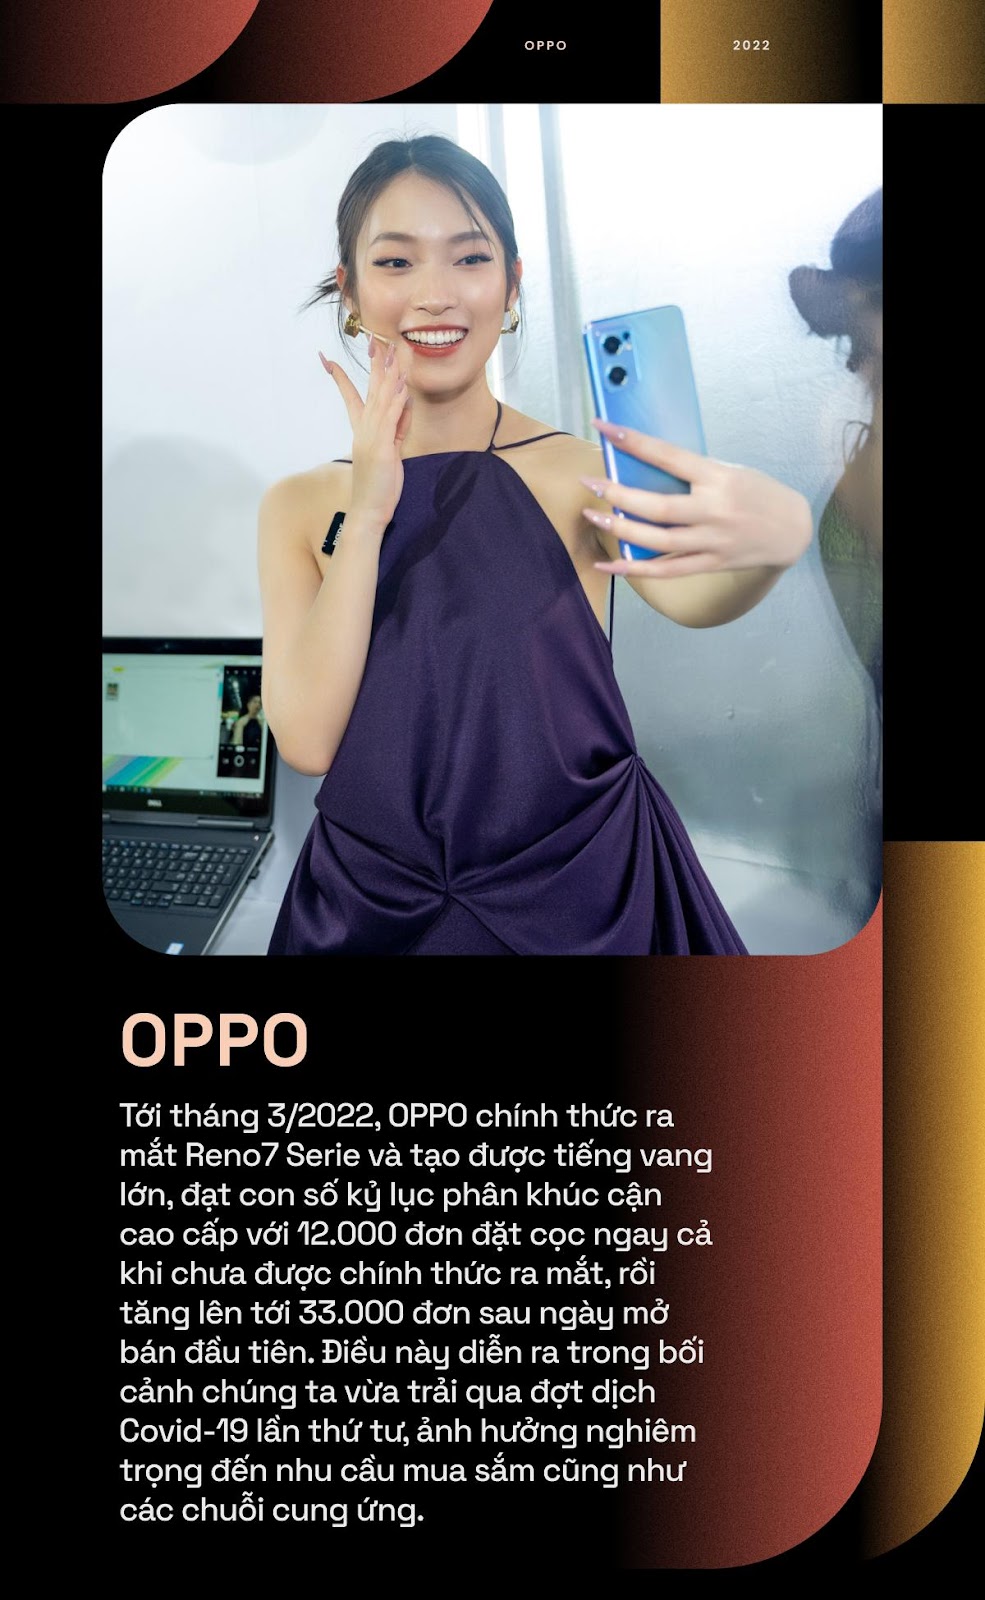 Nhìn lại 2022 đầy xúc cảm của OPPO qua những bức ảnh chân dung thương hiệu - Ảnh 6.